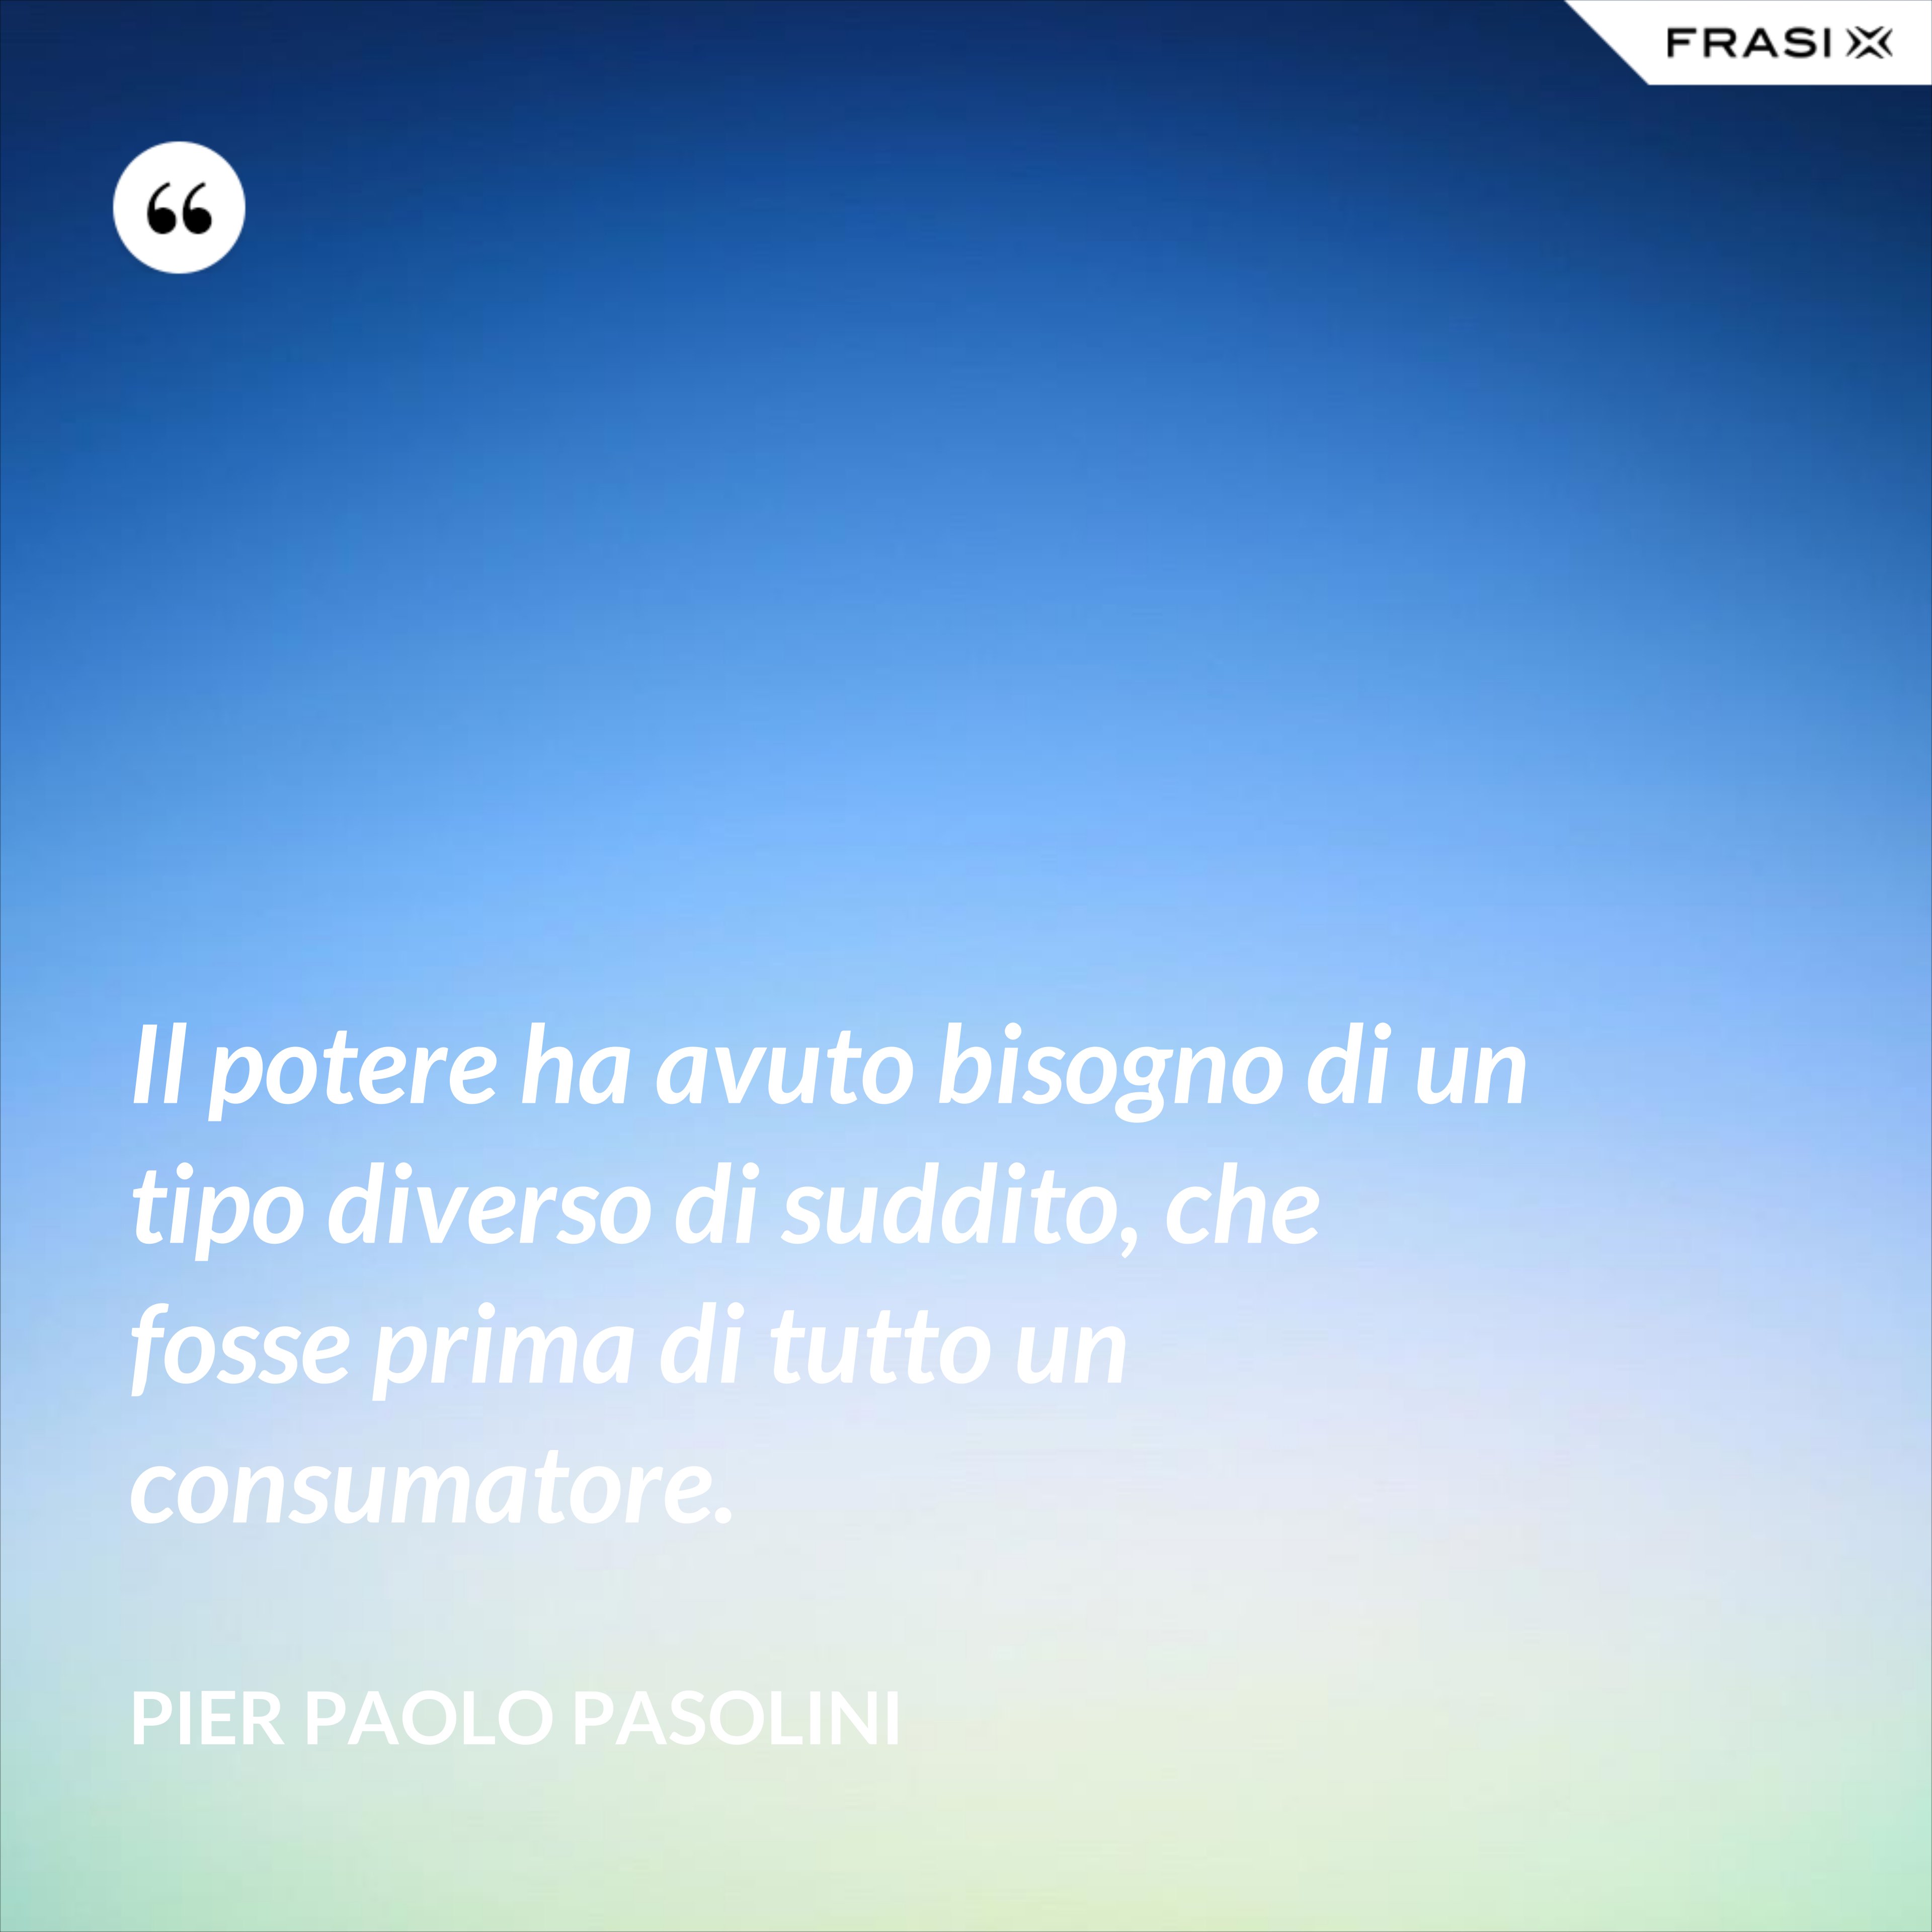 Il potere ha avuto bisogno di un tipo diverso di suddito, che fosse prima di tutto un consumatore. - Pier Paolo Pasolini